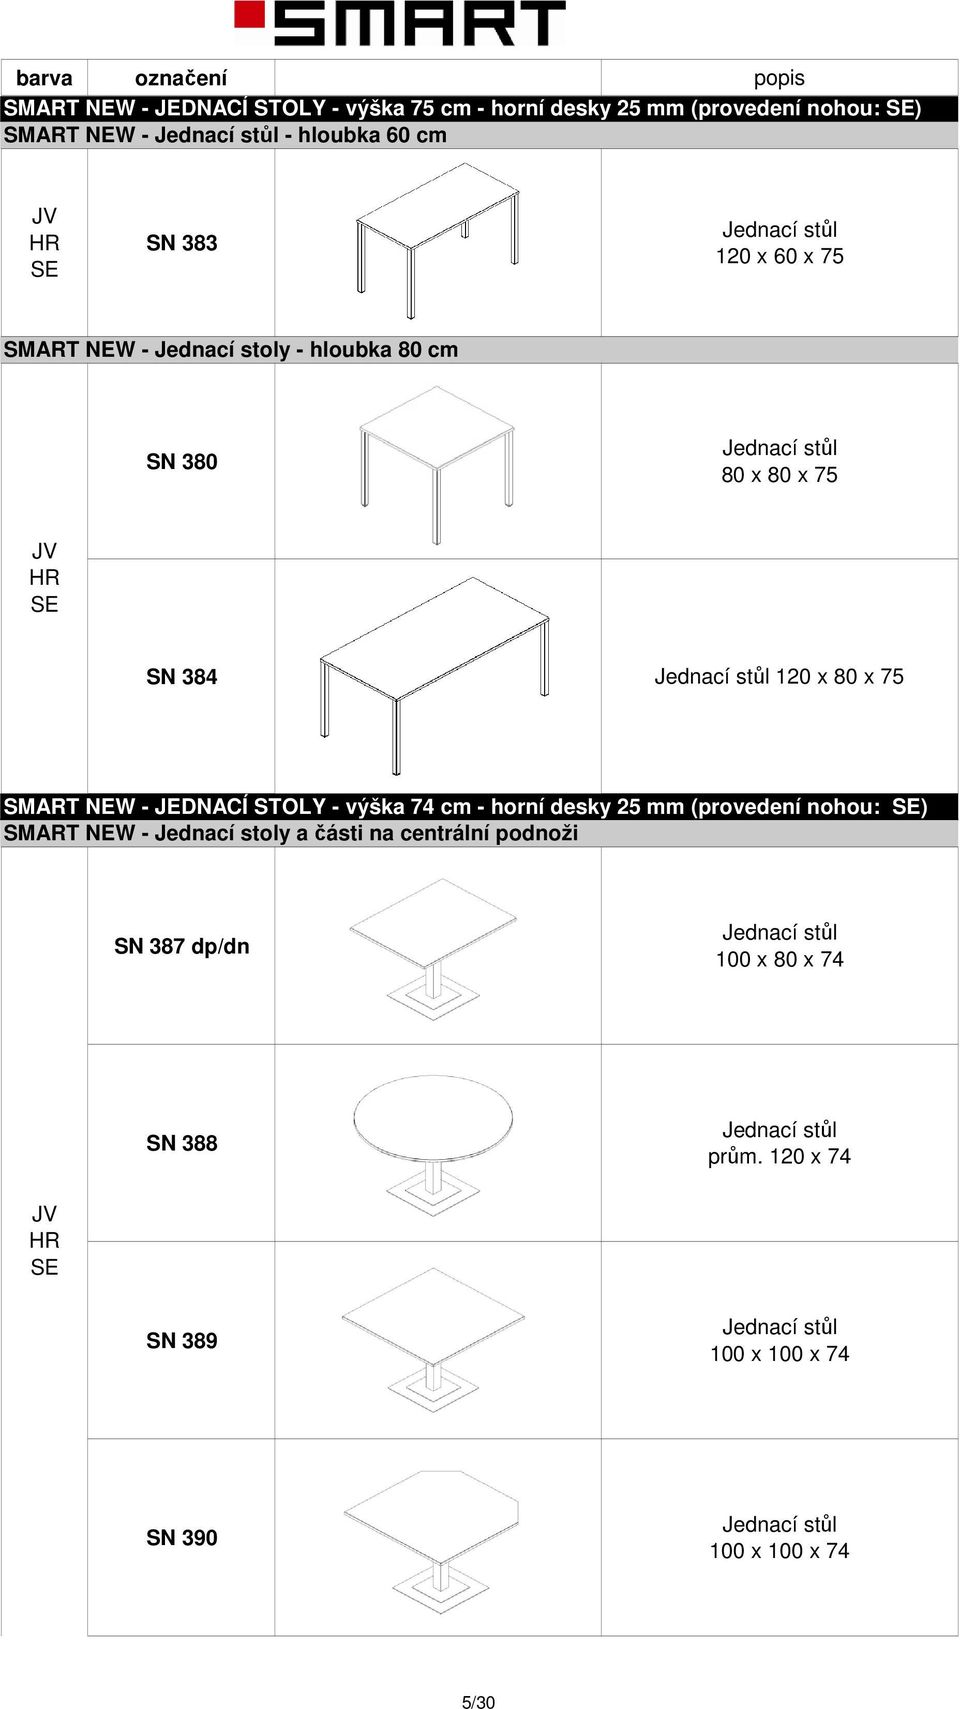 NEW - JEDNACÍ STOY - výška 74 cm - horní desky 25 mm (provedení nohou: ) SMART NEW - Jednací stoly a části na centrální podnoži SN 387